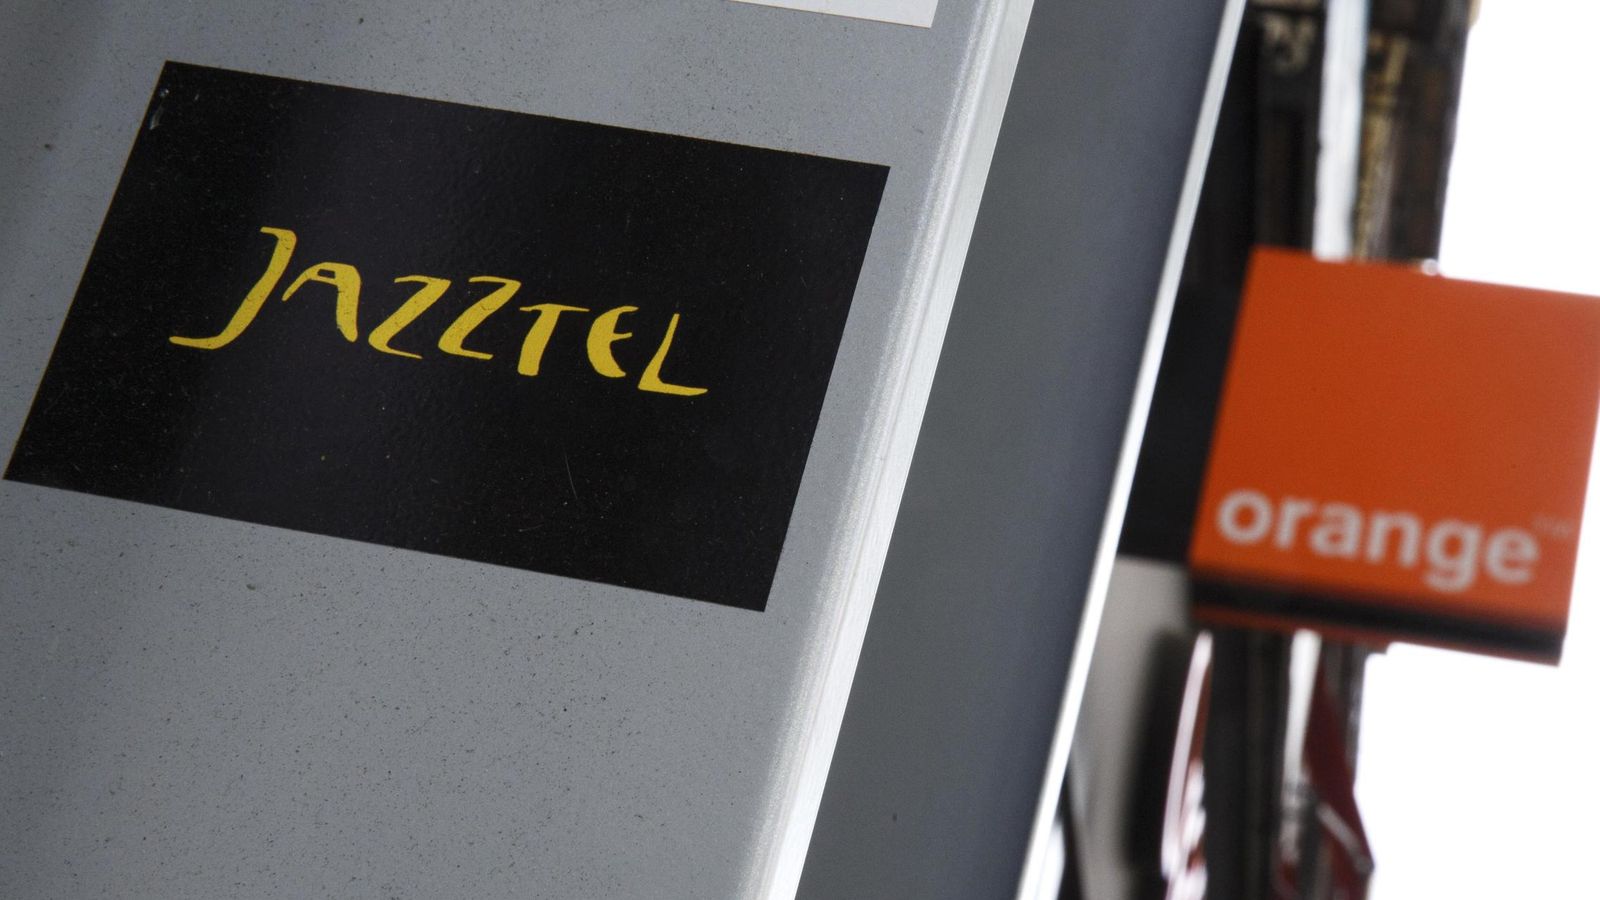 Foto: Los logos de Jazztel y Orange en Madrid. (Reuters)